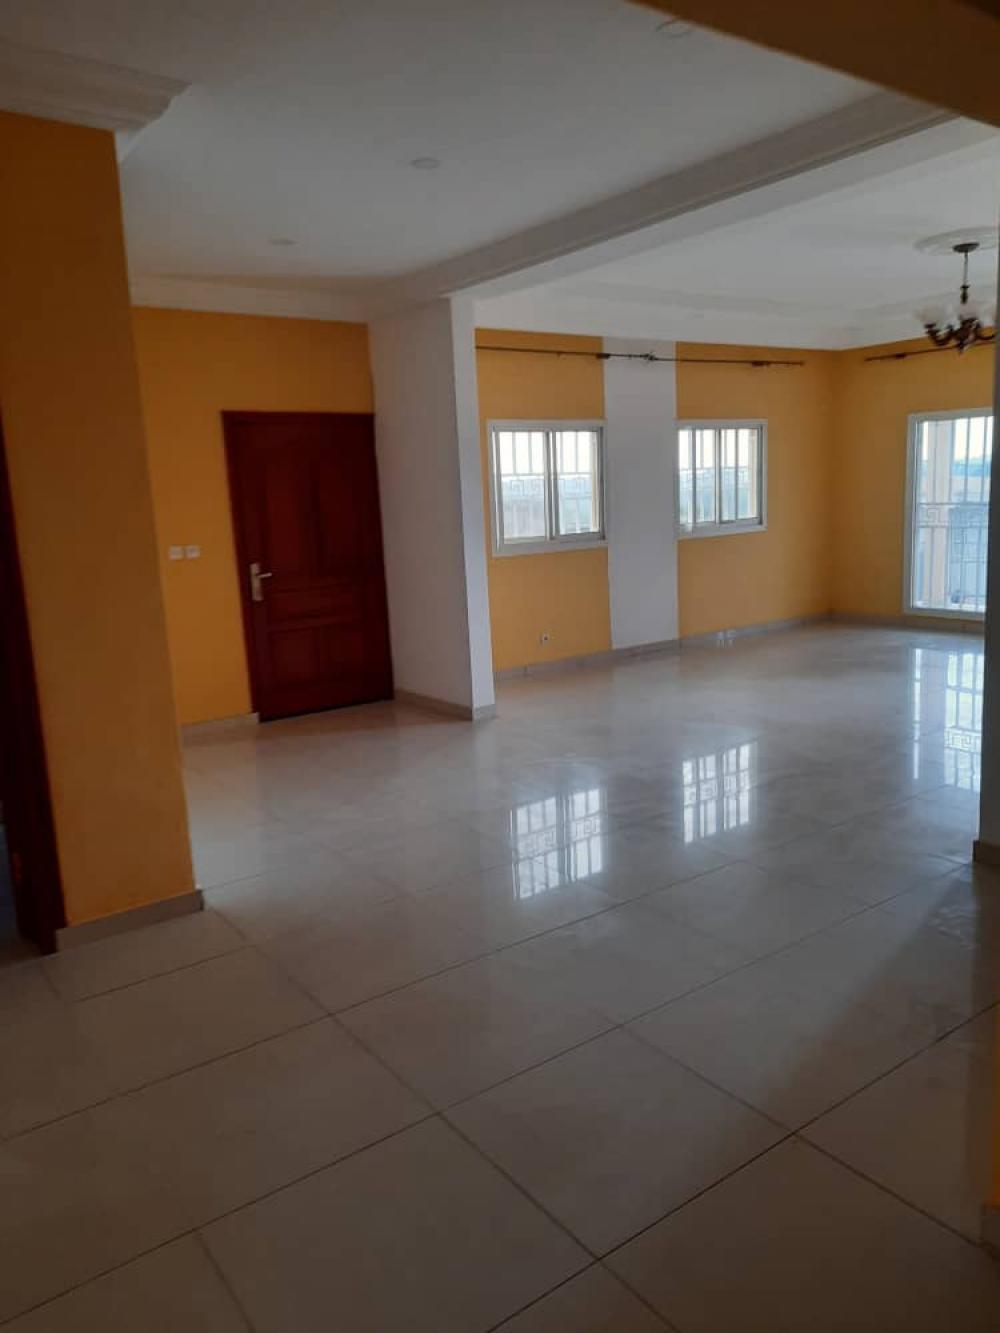 Villa 3 chambres à louer à Libreville, Charbonnages. Prix: 400 000 FcfaPhoto Annonce Gabonhome 